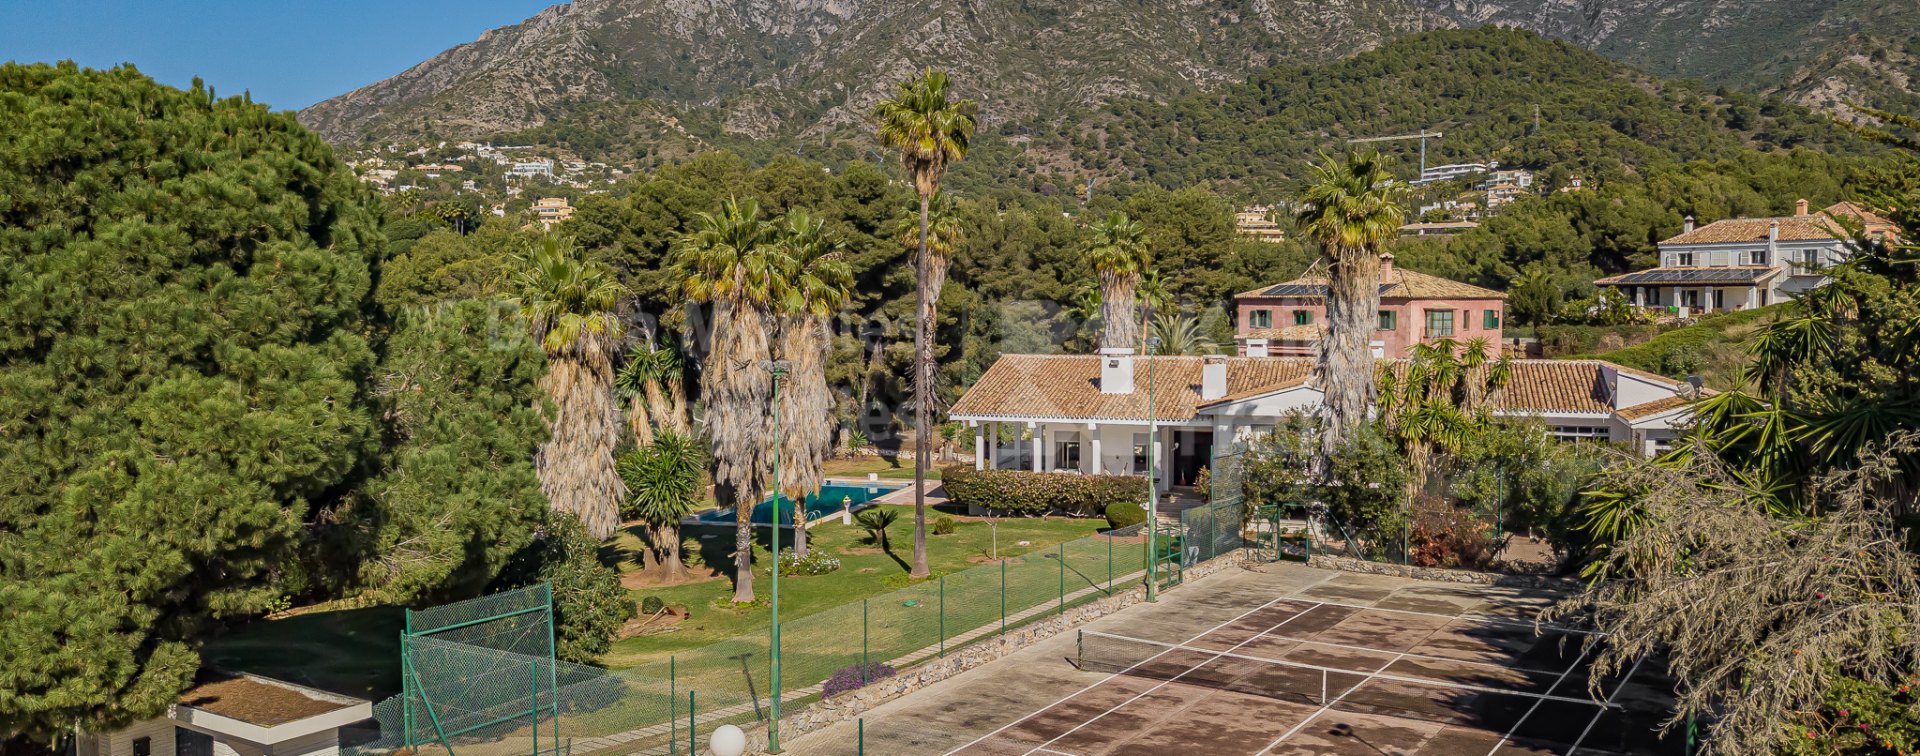 El Mirador, Villa con maravillosas vistas en una gran parcela